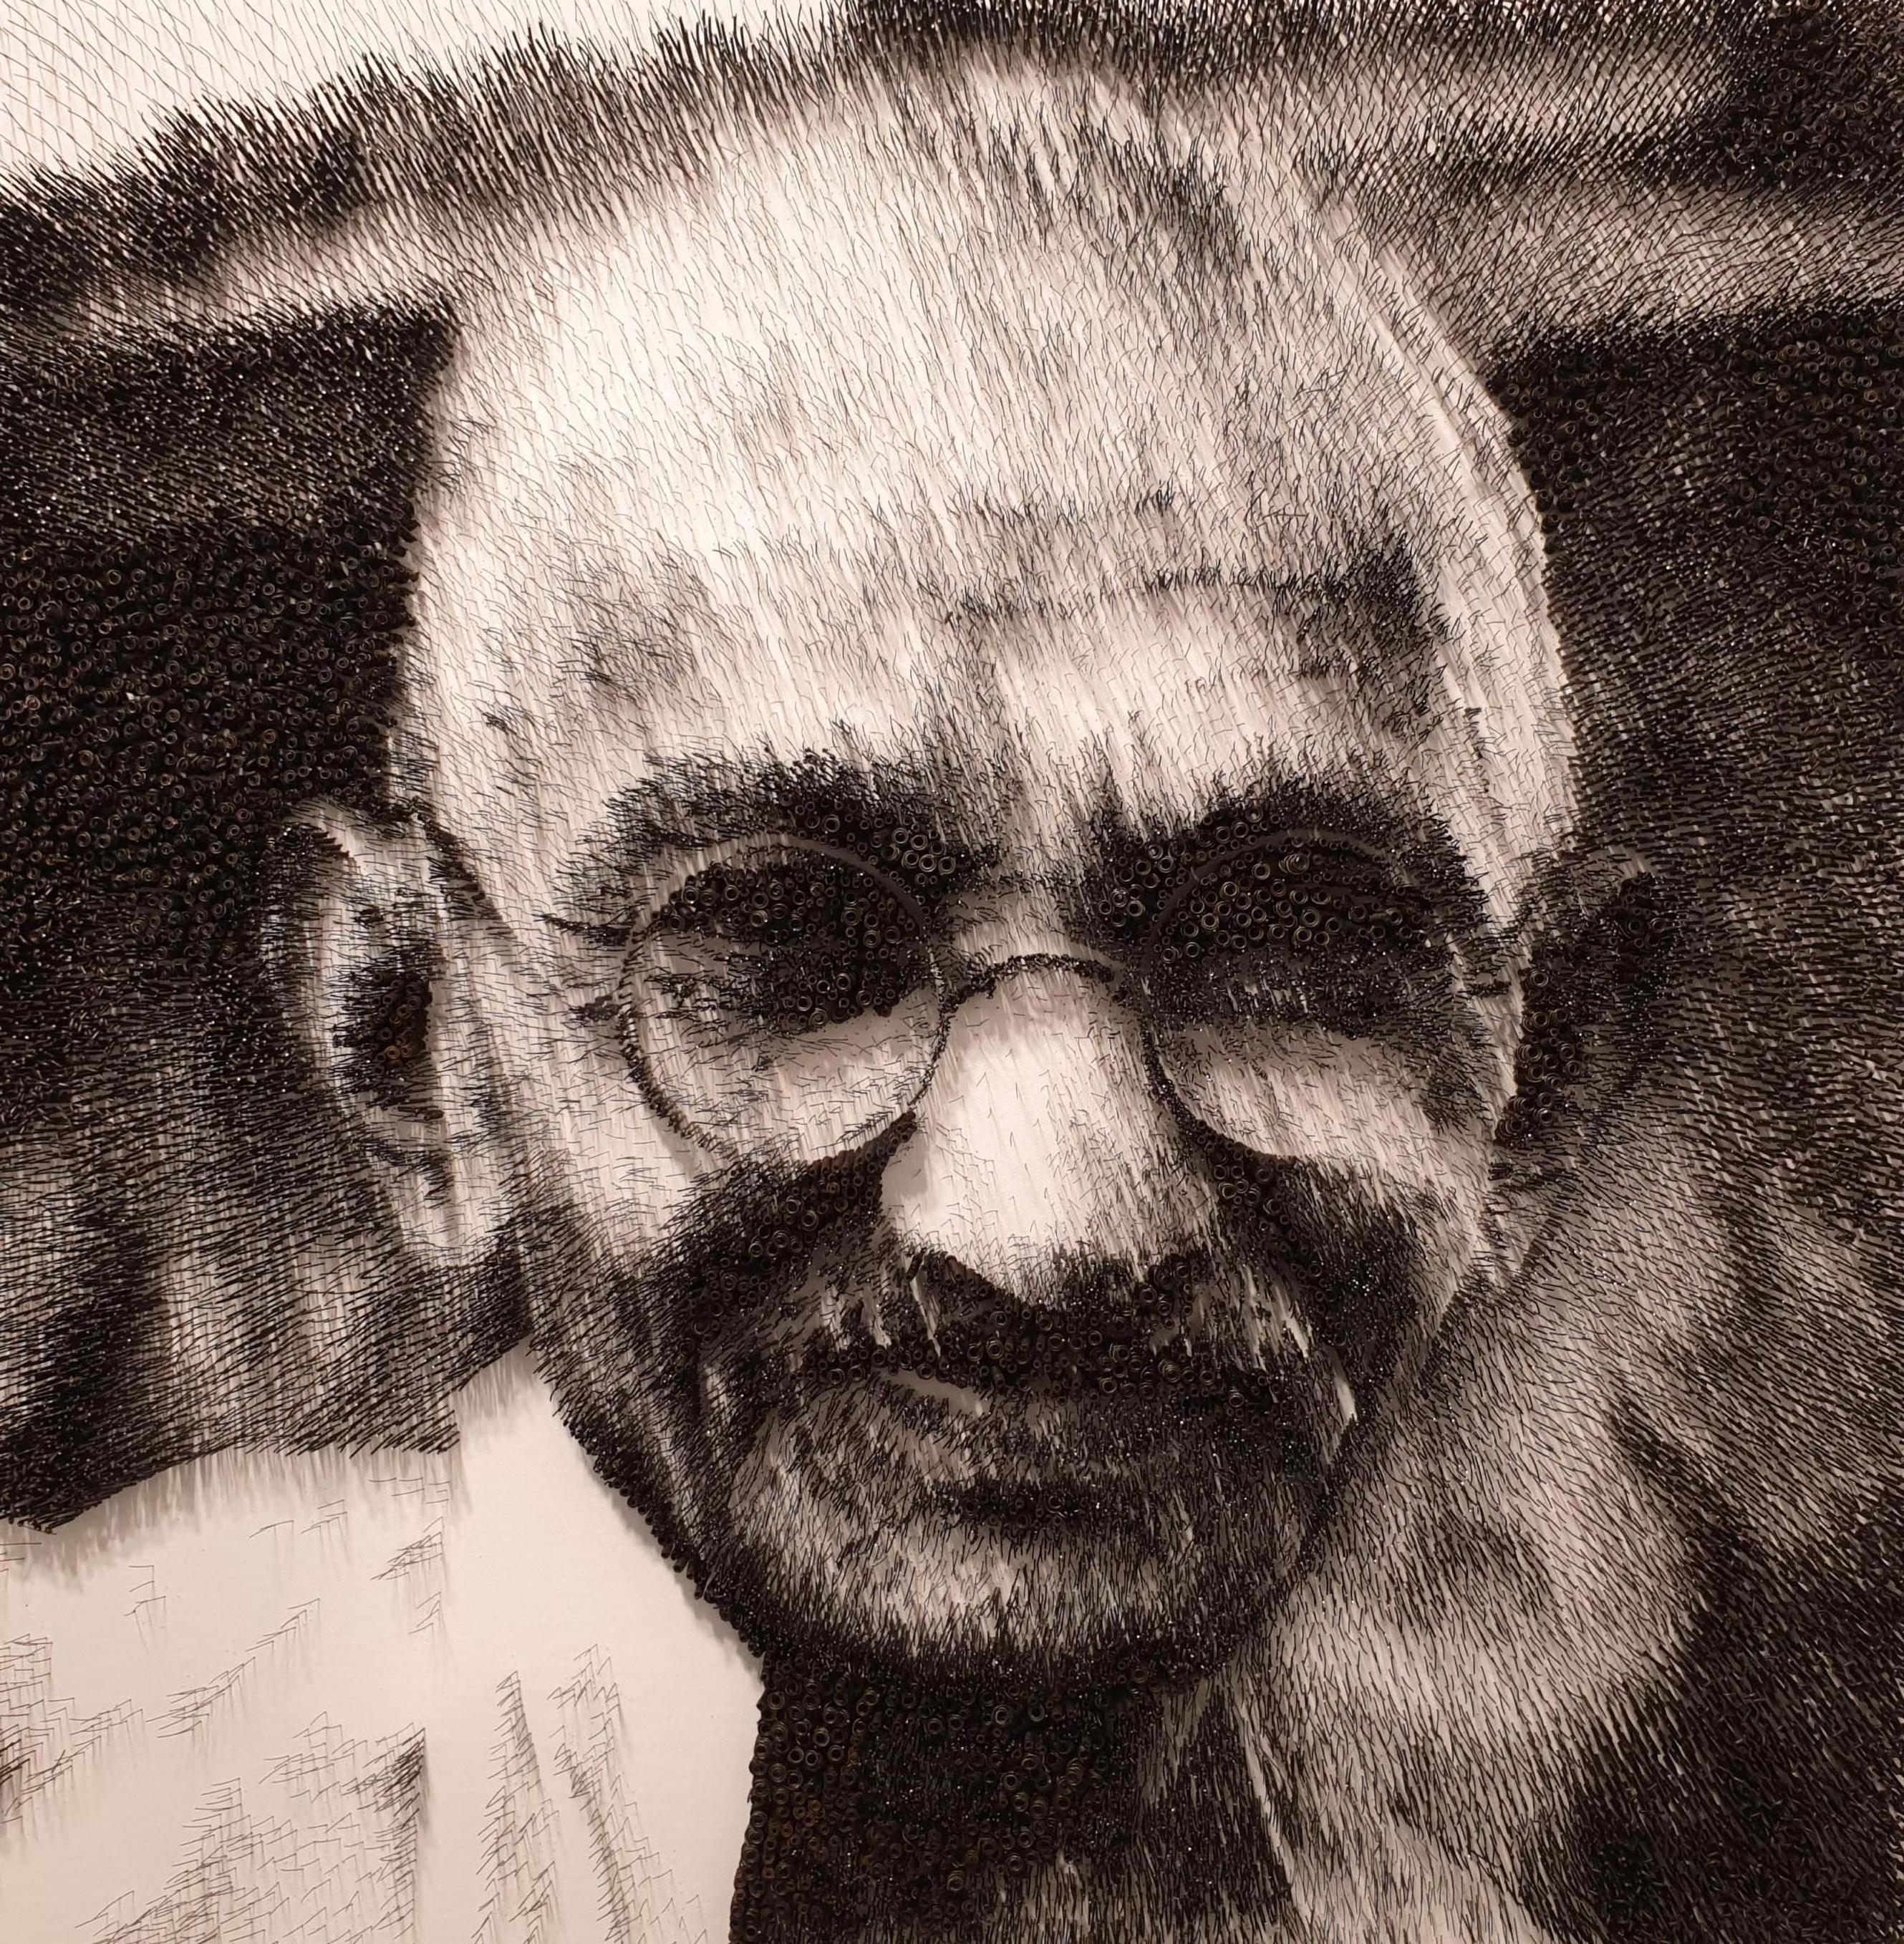 Mohandas Gandhi[Schwarz-Weiß, Stahl auf Leinwand, Stereoskop, Porträt, neue Medien] – Mixed Media Art von Kim Yong Jin